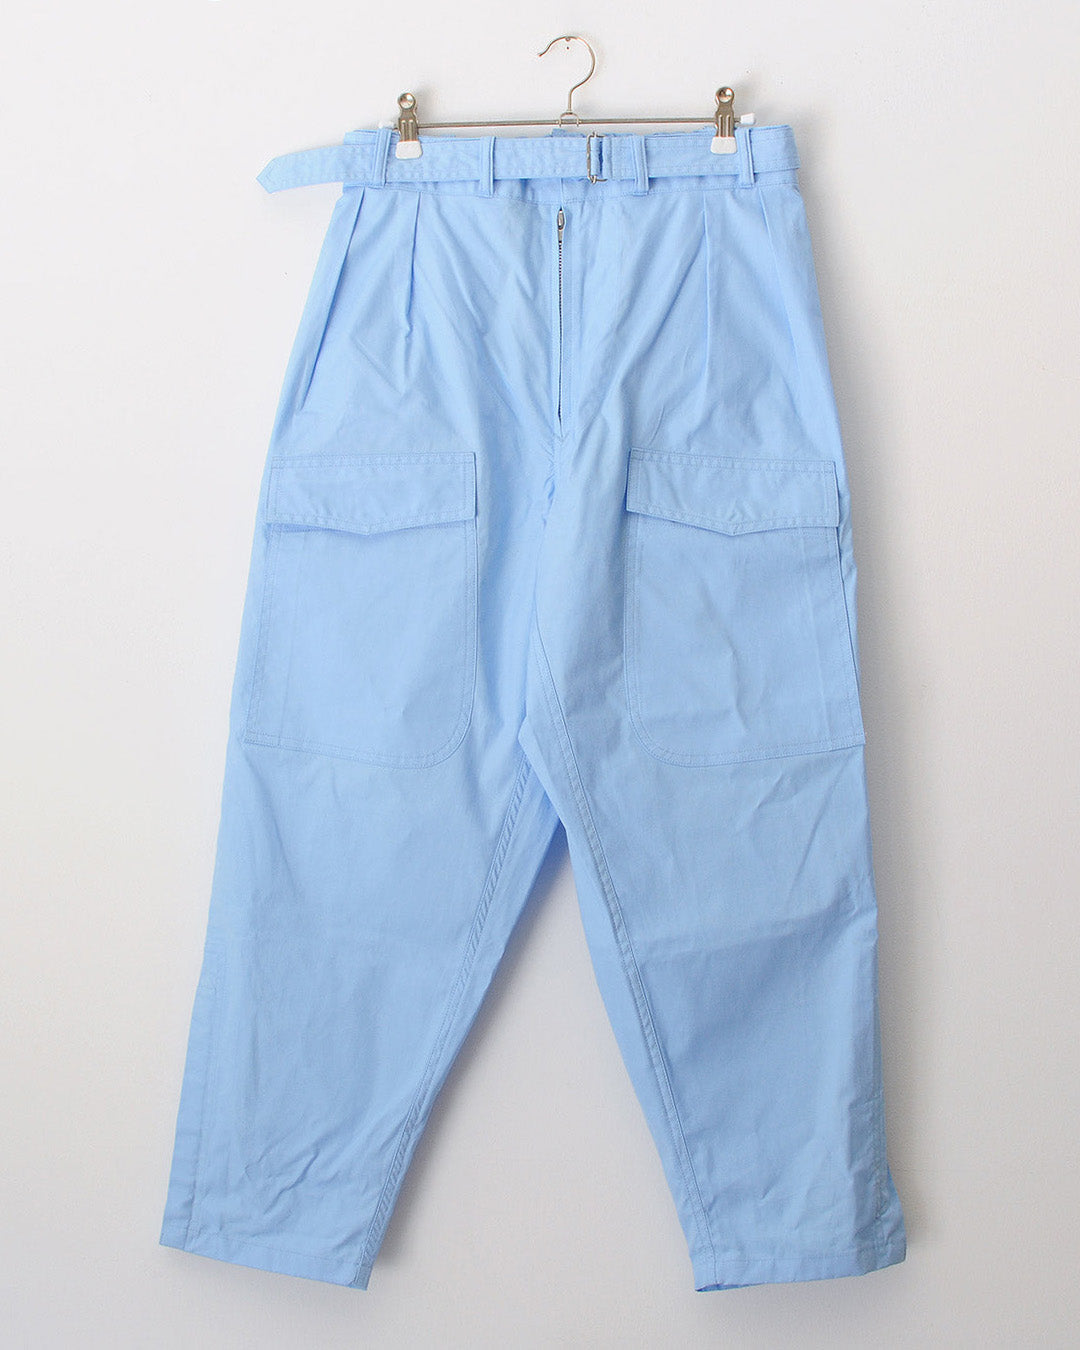 TUKI pilot pants / sax blue / oxford